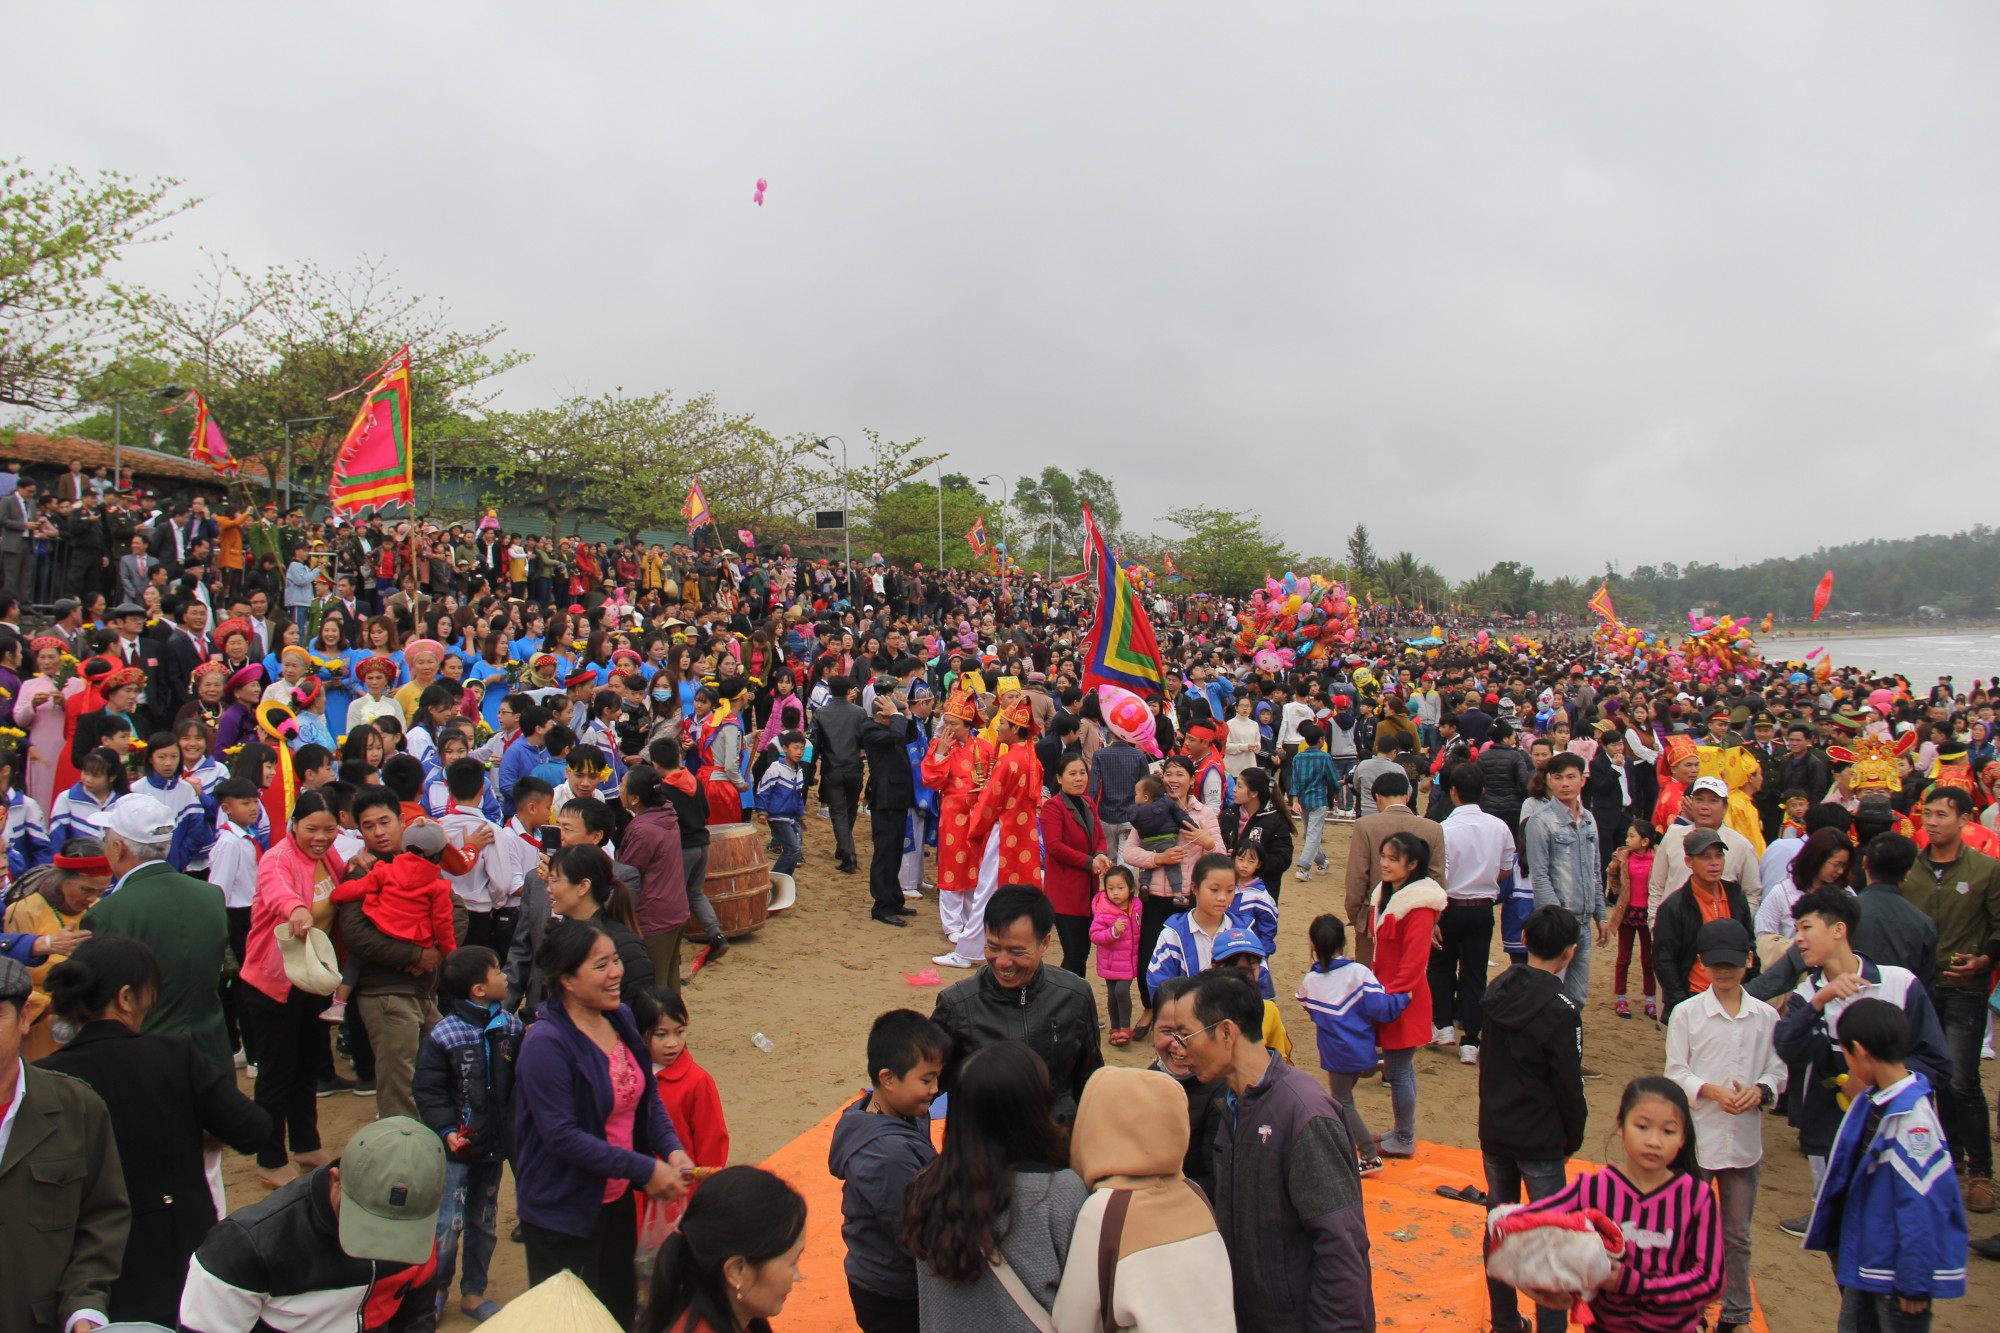 Hàng ngàn người chen lẫn trong lễ hội Đền Cờn tại thị xã Hoàng Mai, Nghệ An